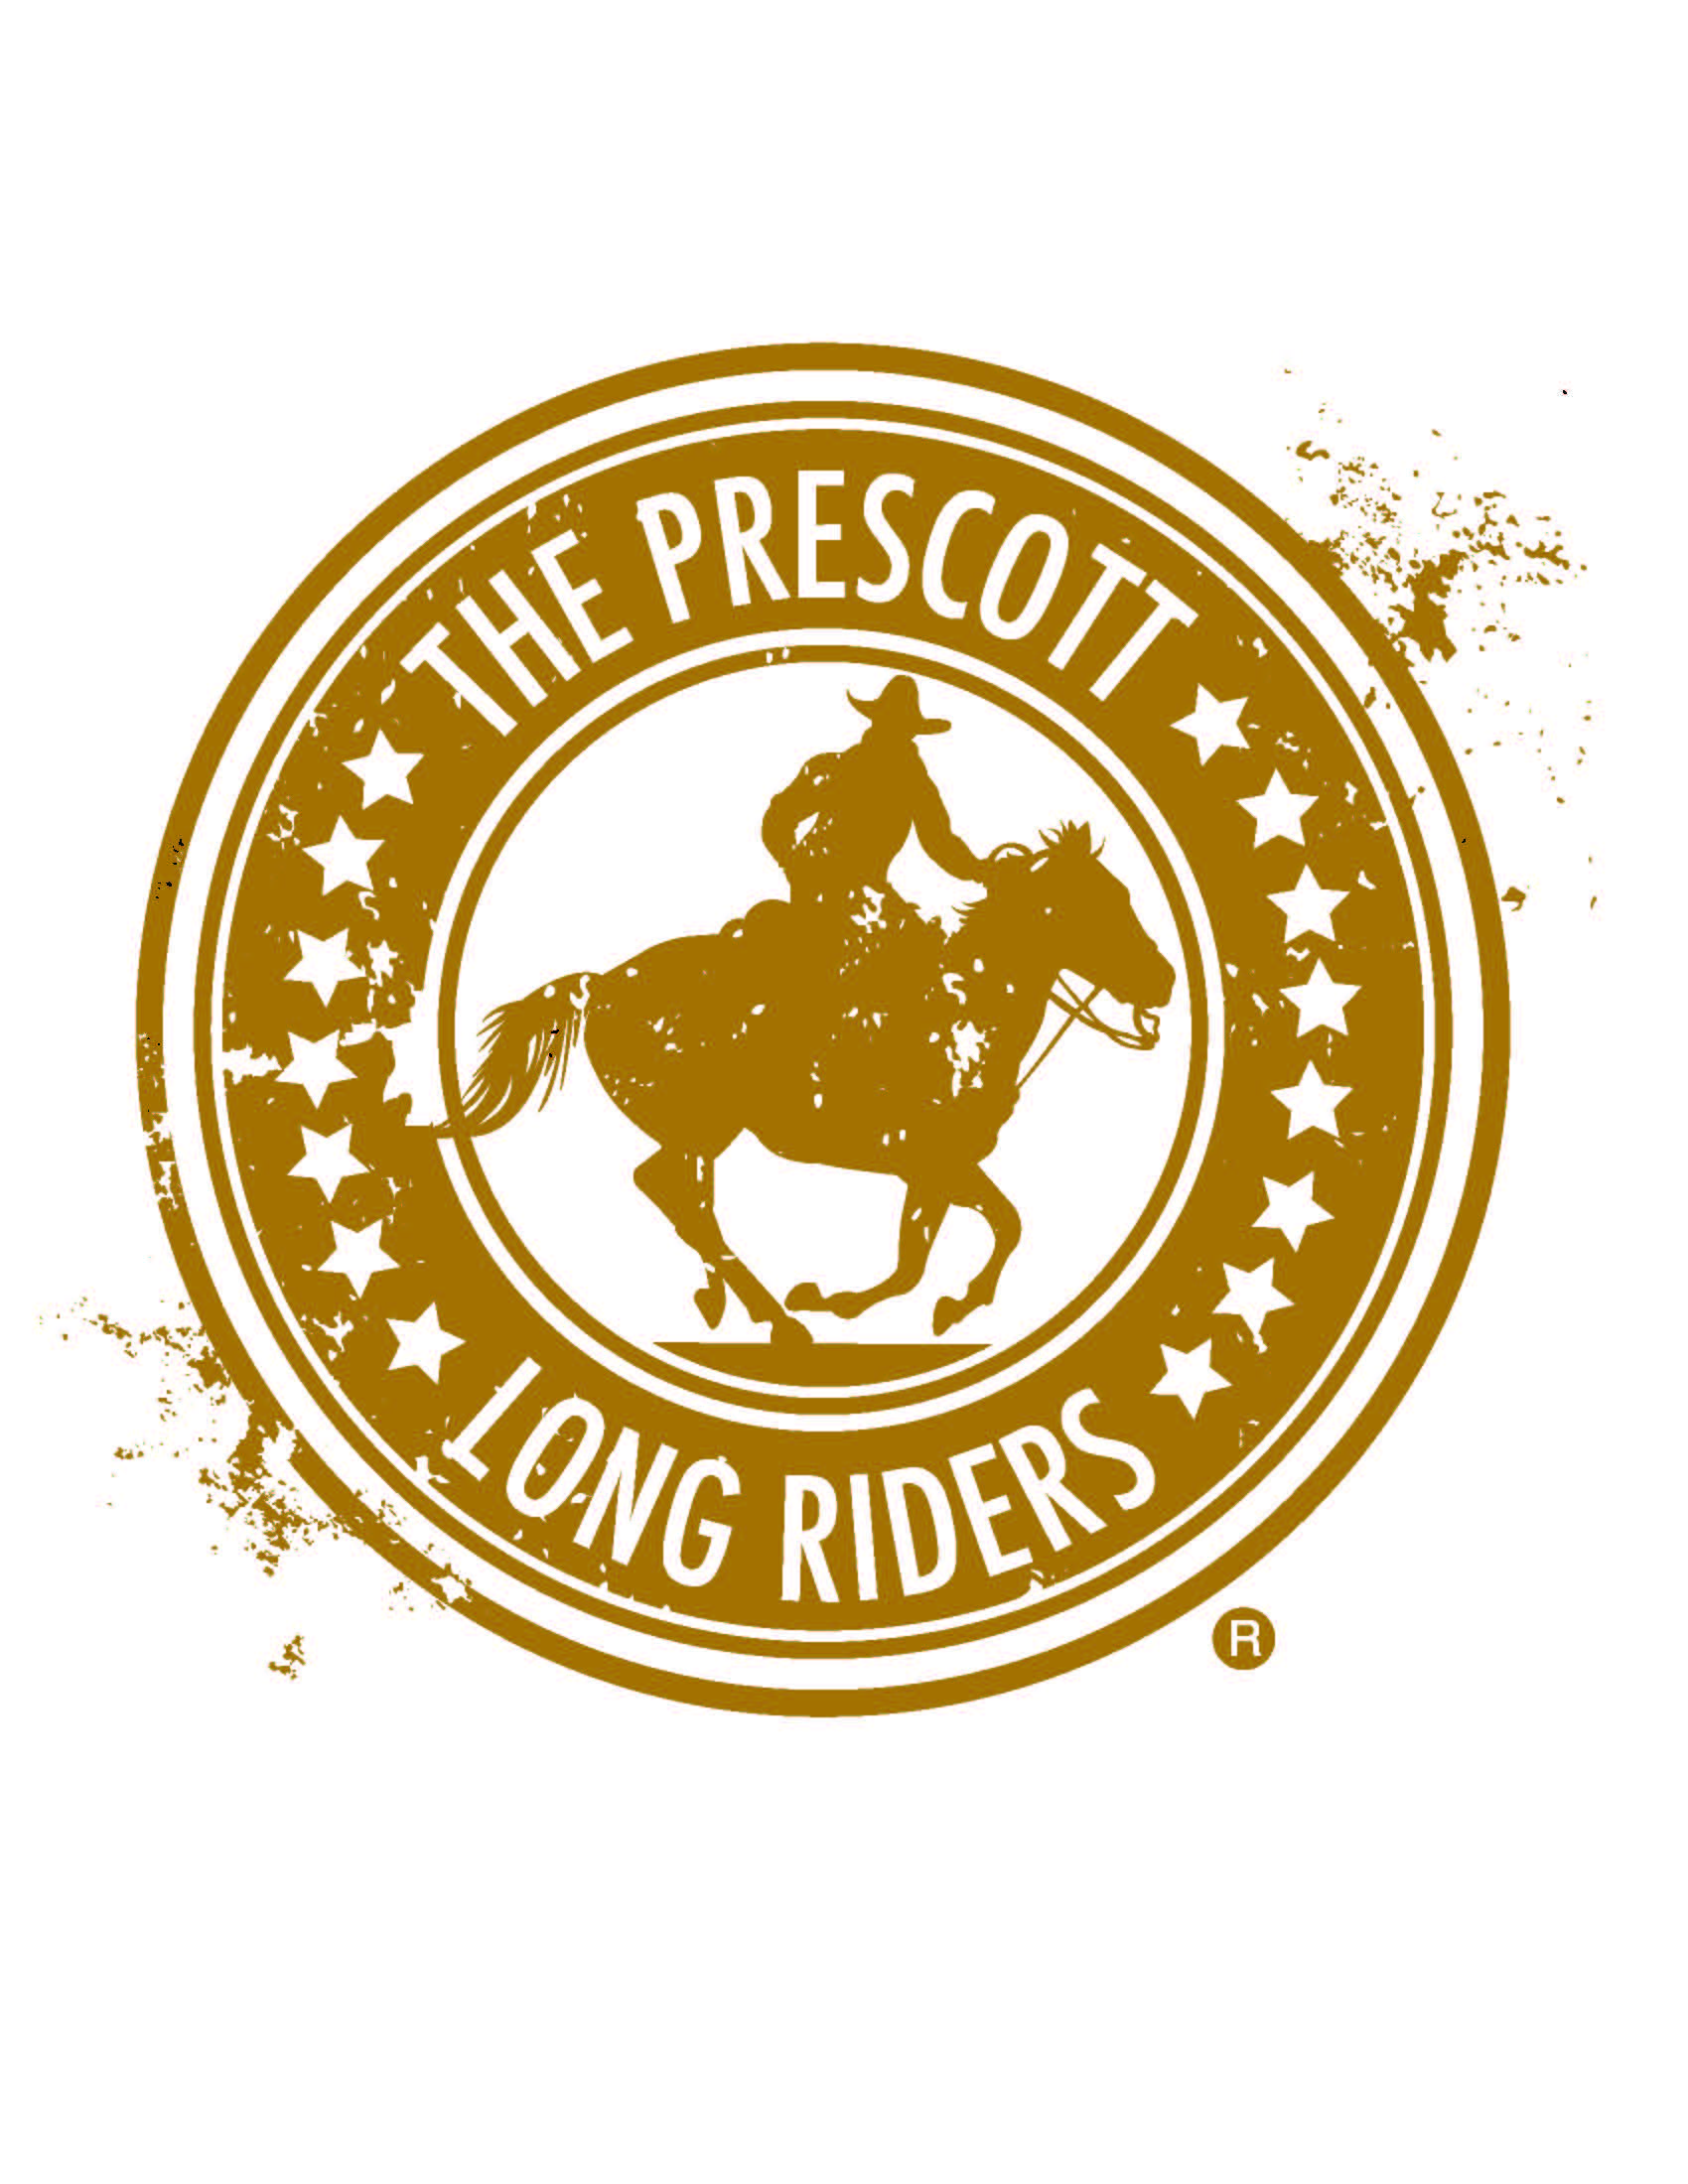 Prescott Long Riders, Inc